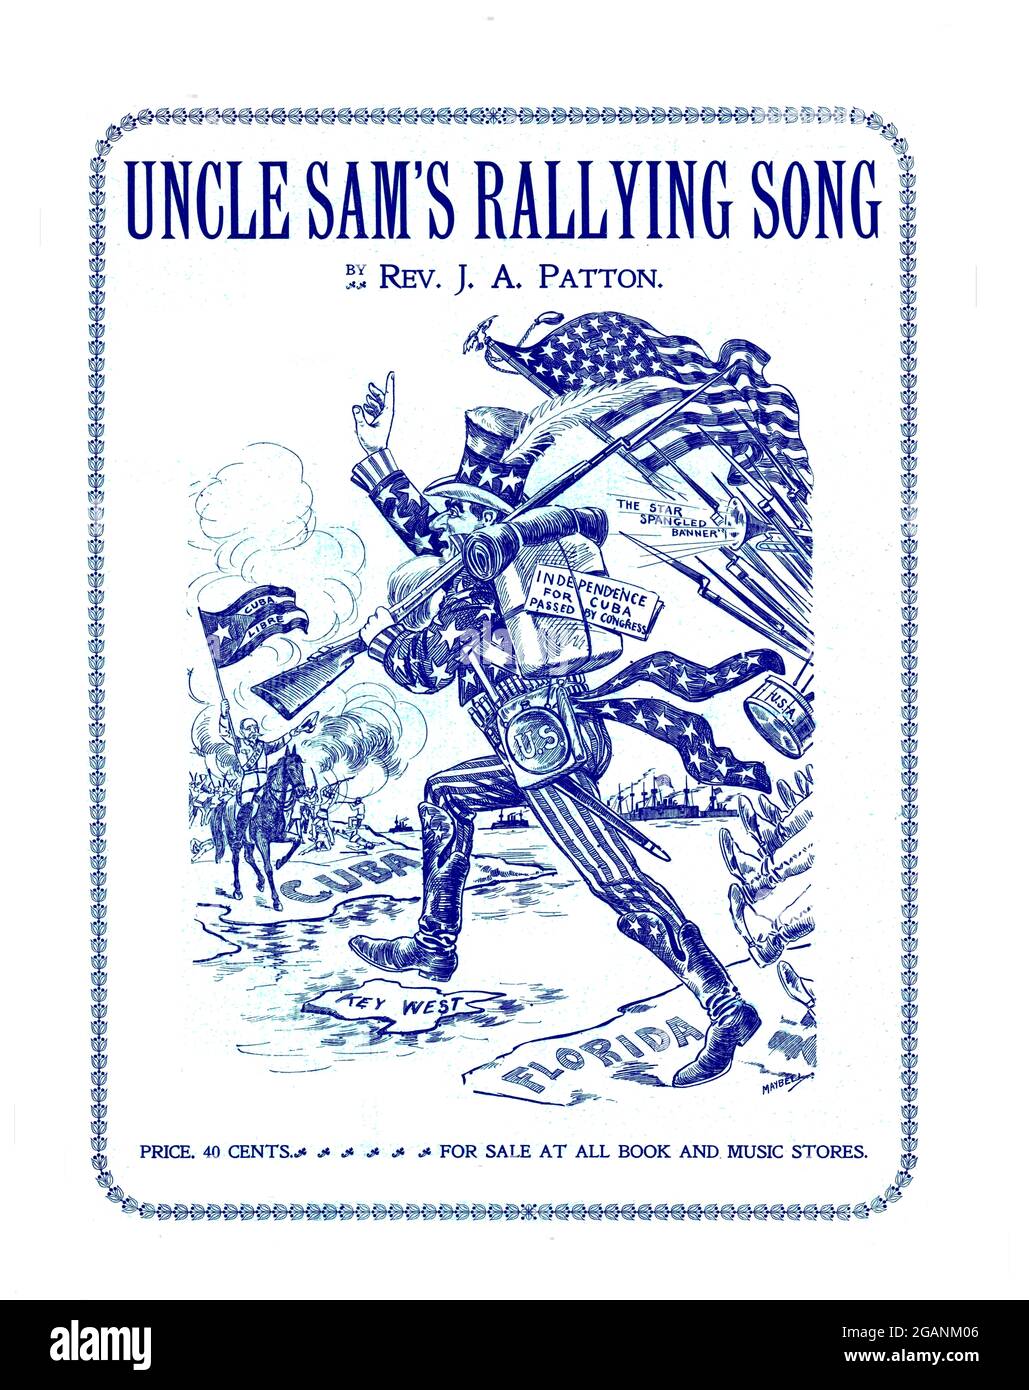 Oncle Sam's Rallying Song, 1898 Noten des Spanischen Amerikanischen Krieges, illustriert Key West, Florida, Kuba, Gewehre, amerikanische Flagge US Army & Navy. Stockfoto